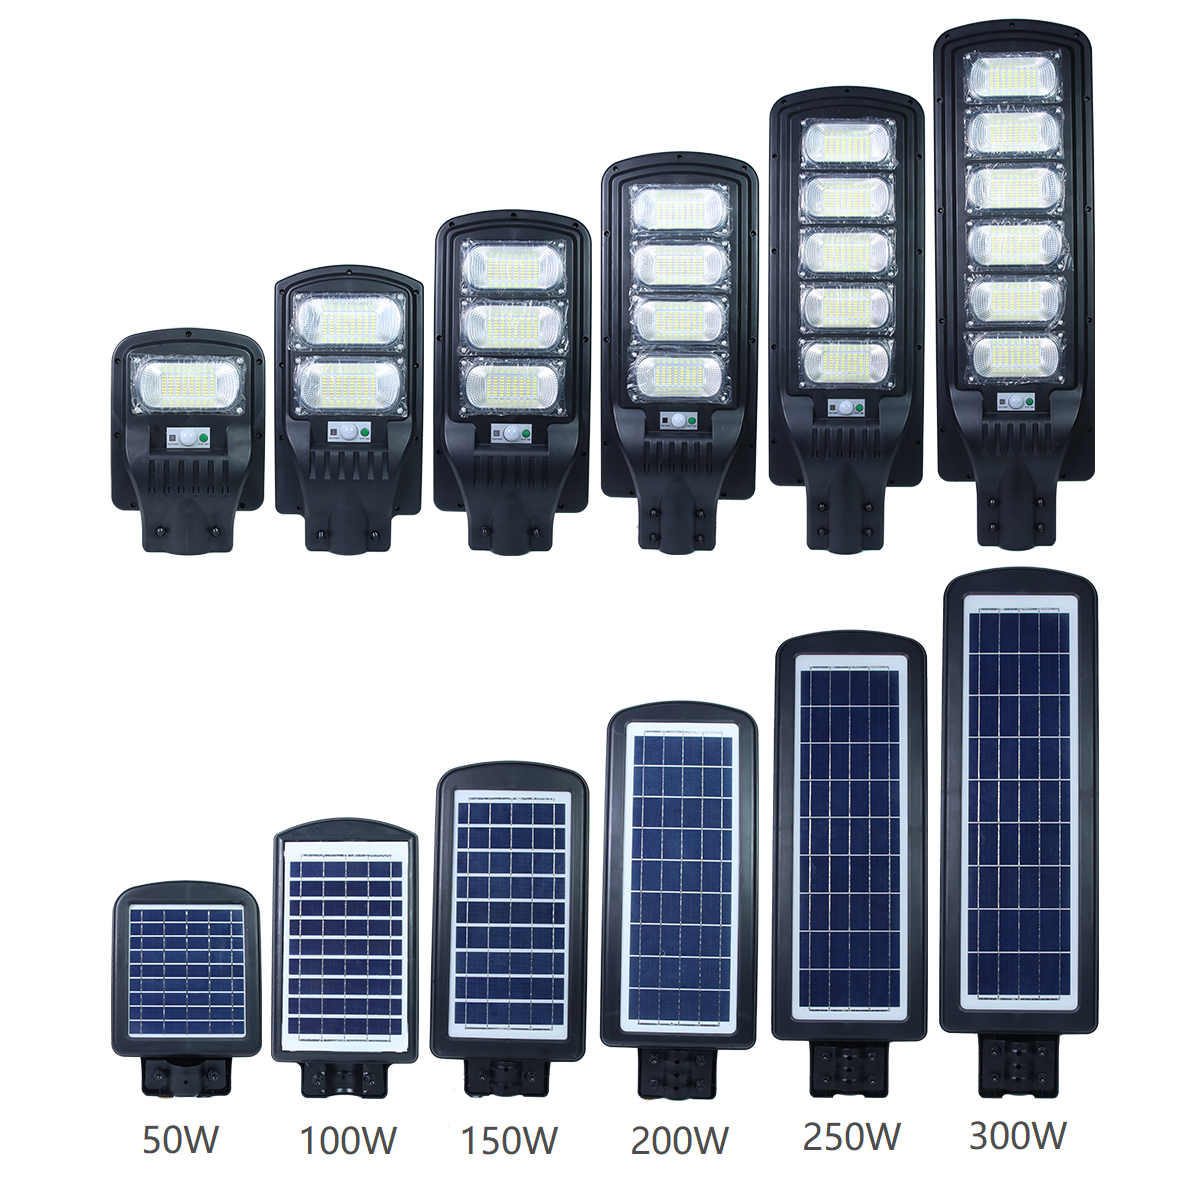 Module designed Solar garden Light 50W 100W 150W 200W 250W 300W all in one solar street light outdoor